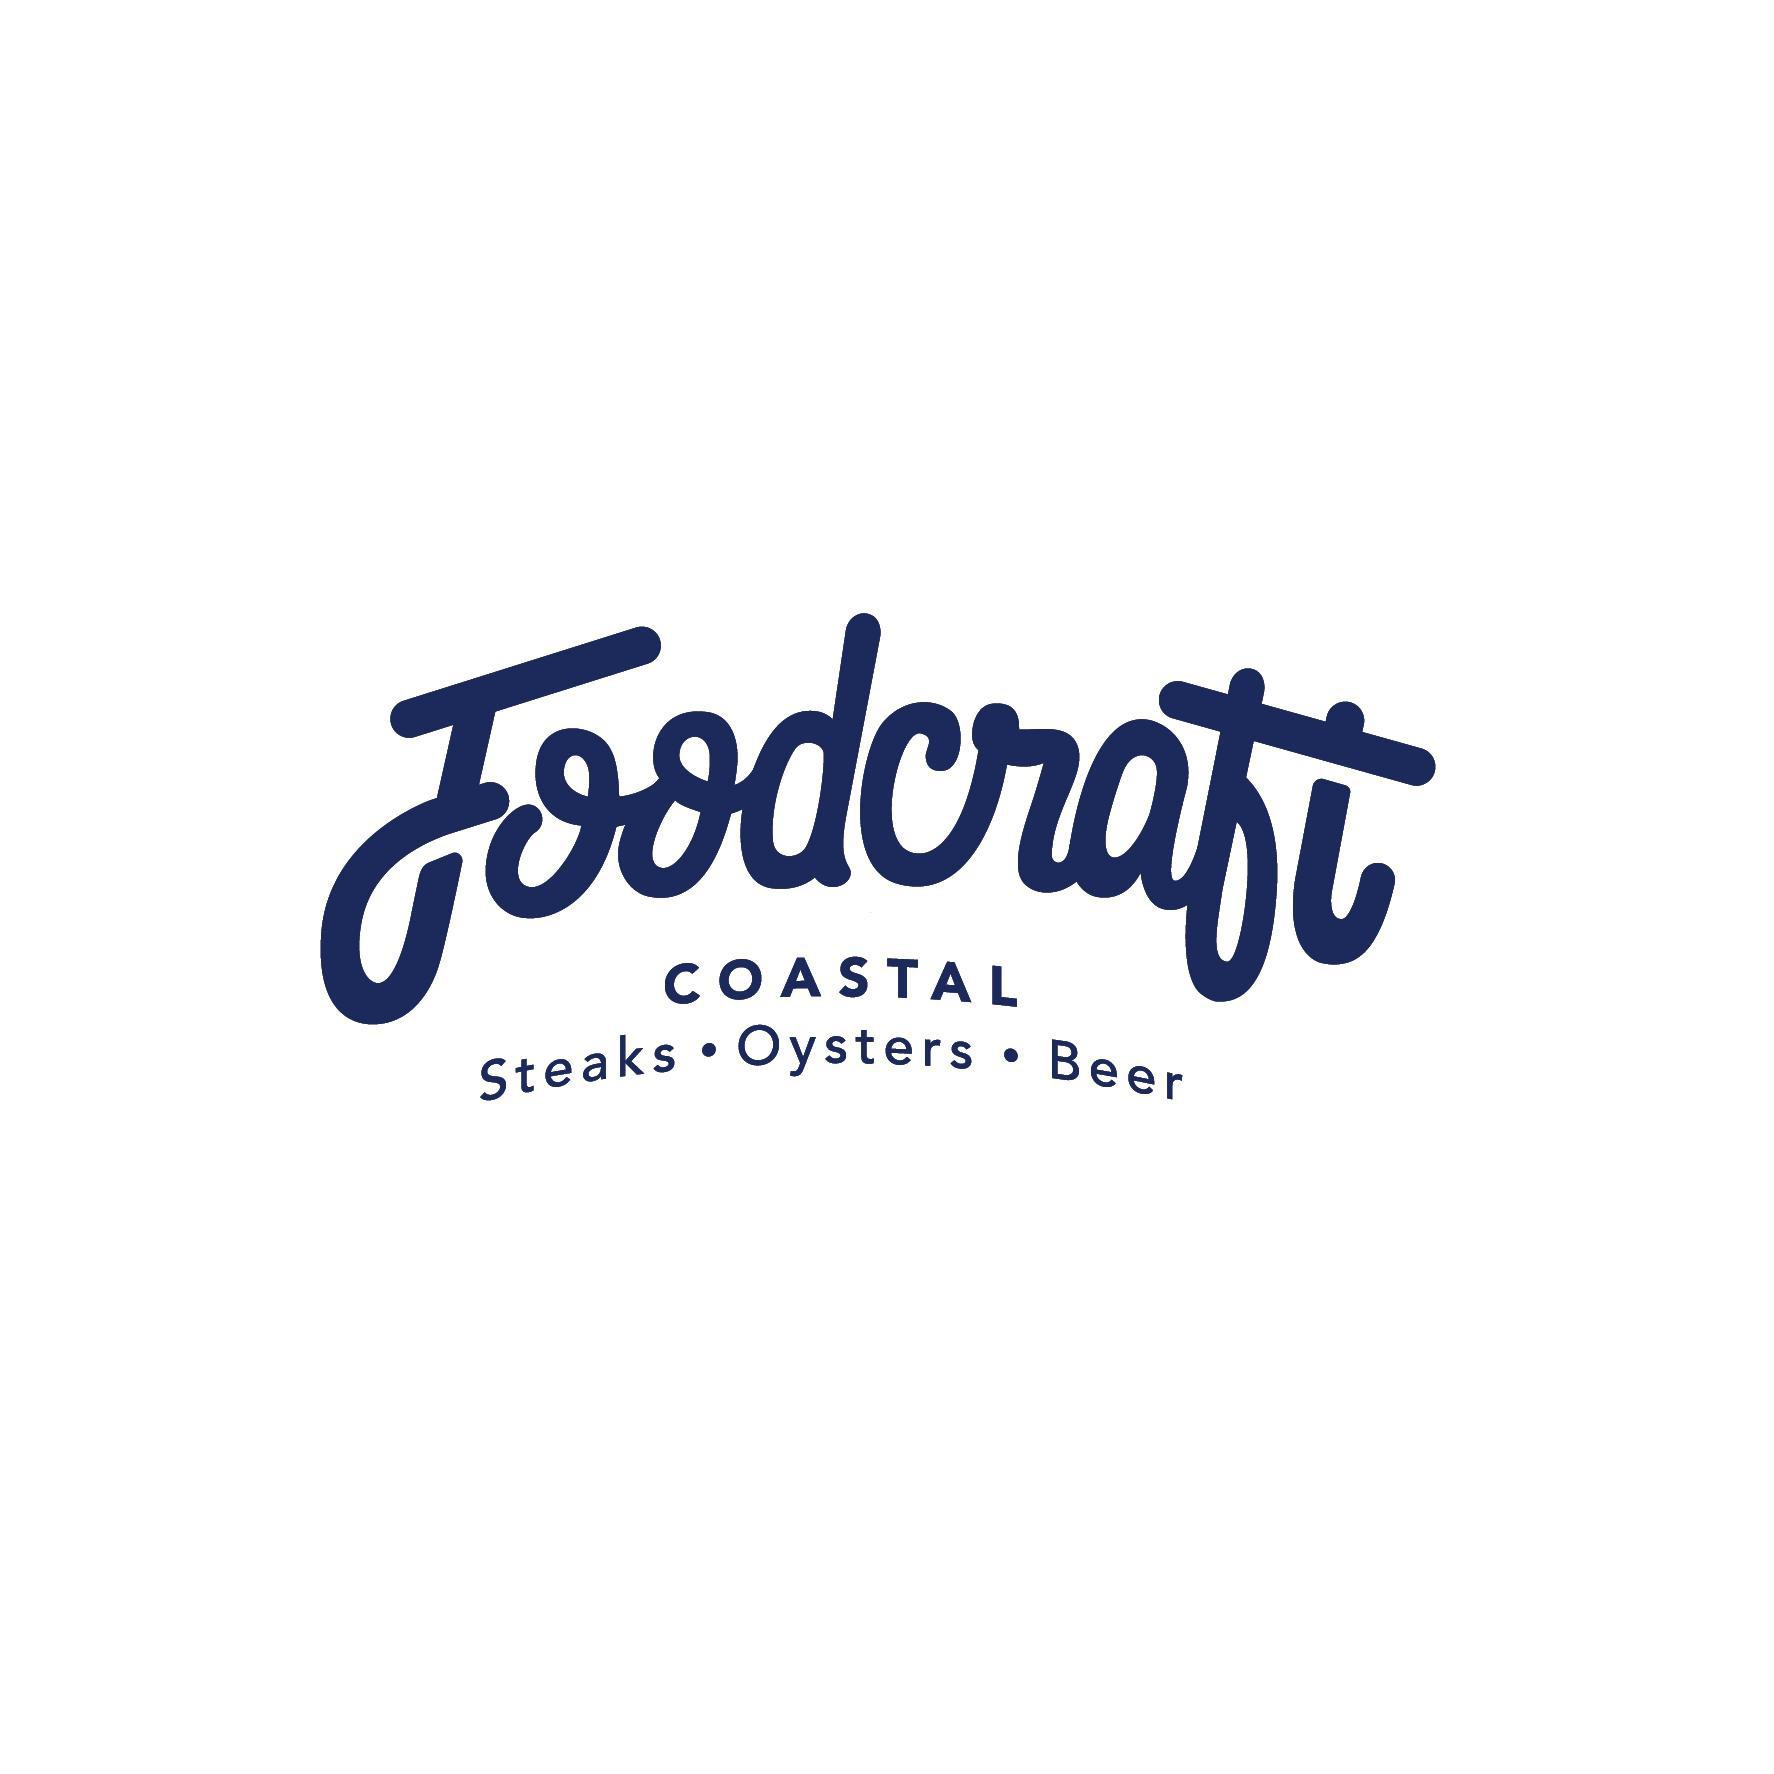 Foodcraft